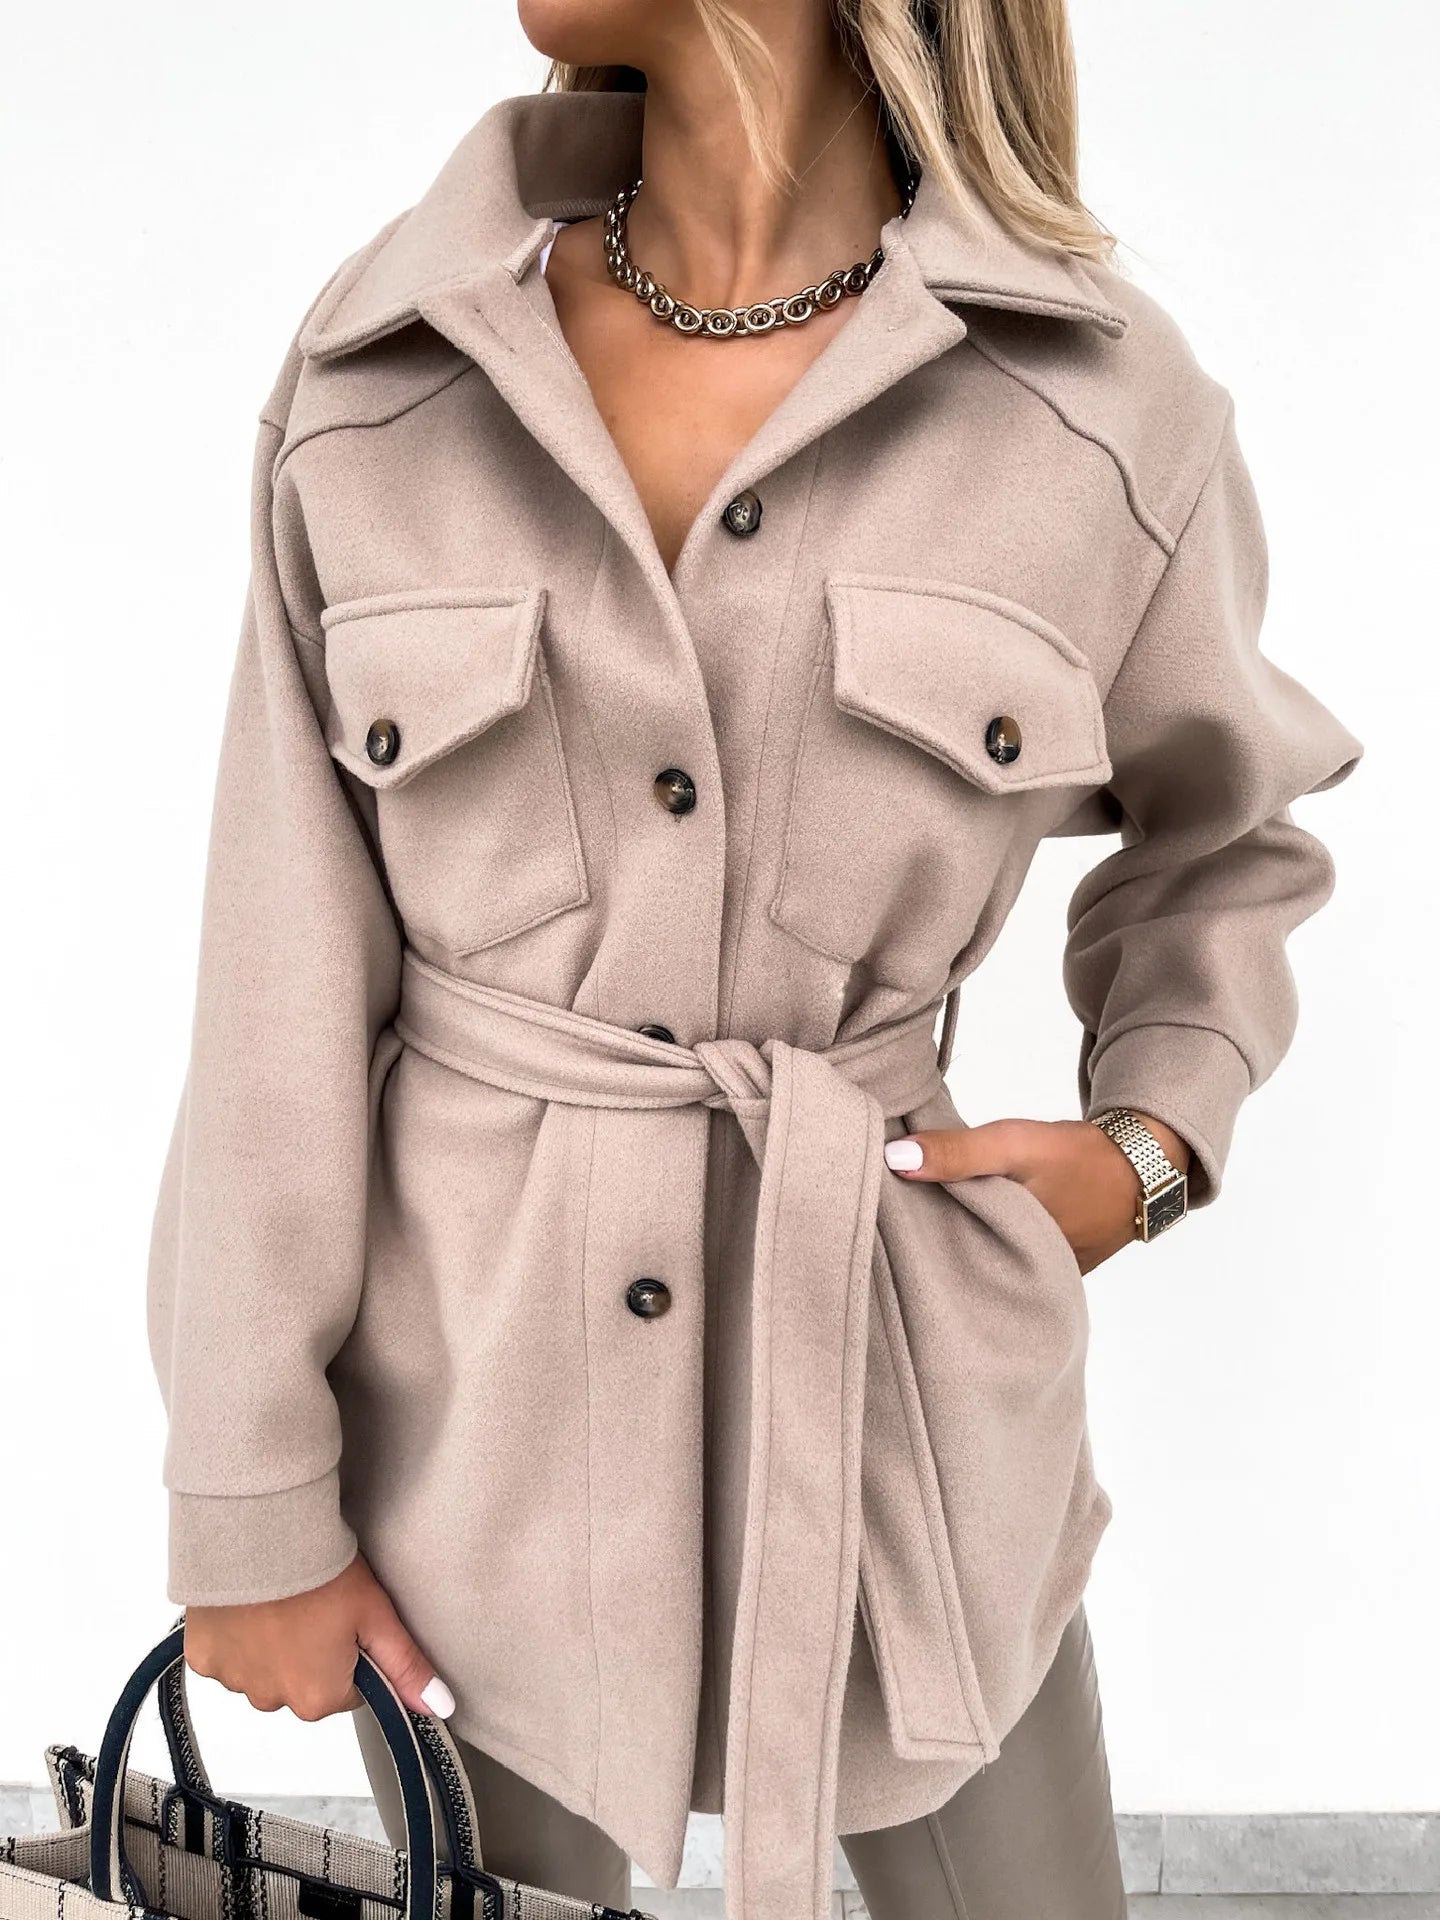 Jady™ | Women's jacket